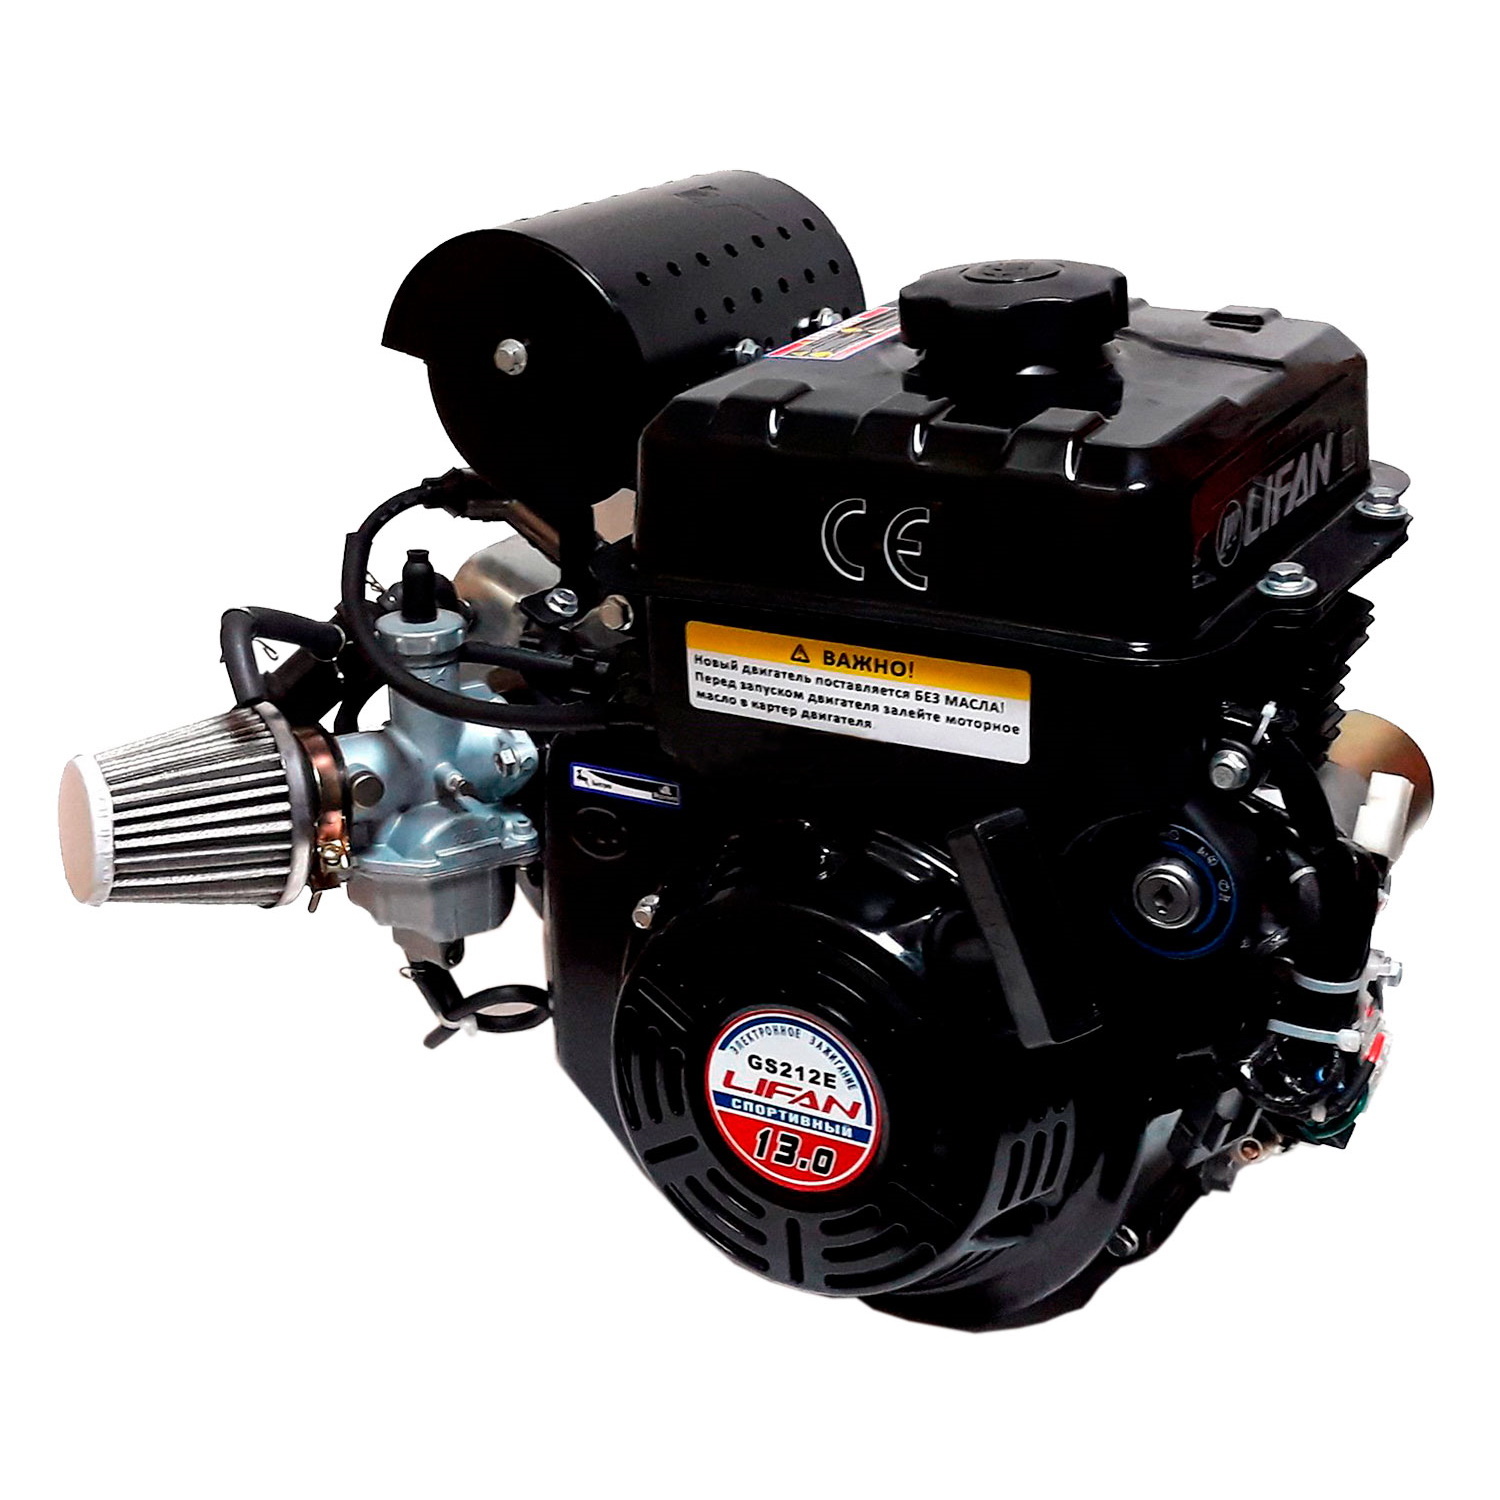  двигатель Lifan GS212E (13 л.с.). Цена на Lifan GS212E в .